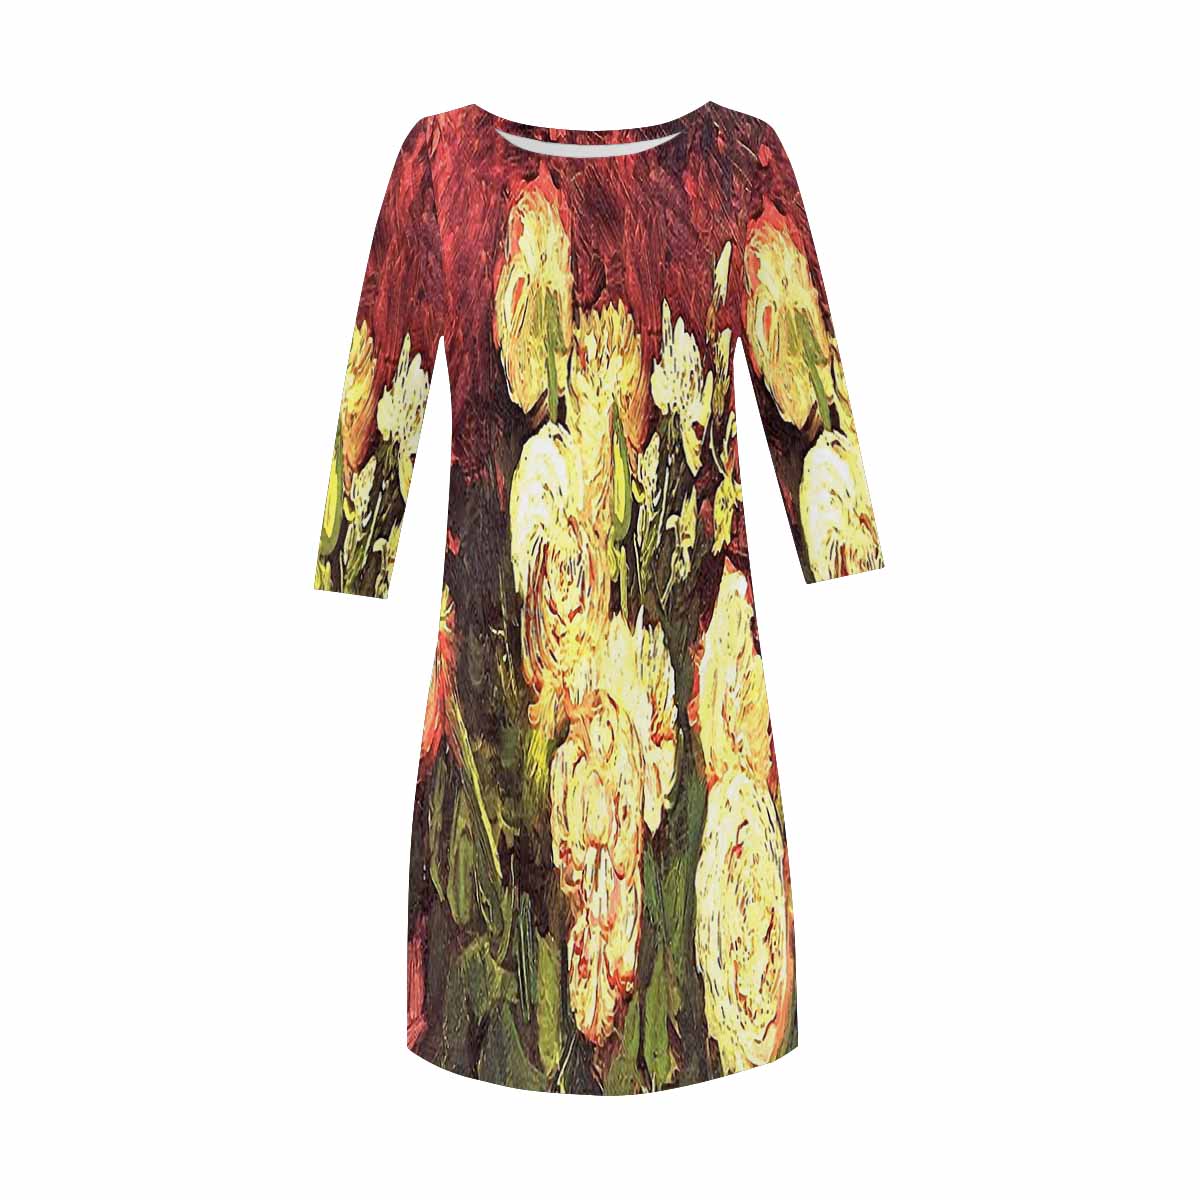 Vintage floral loose dress, model D29532 Design 27